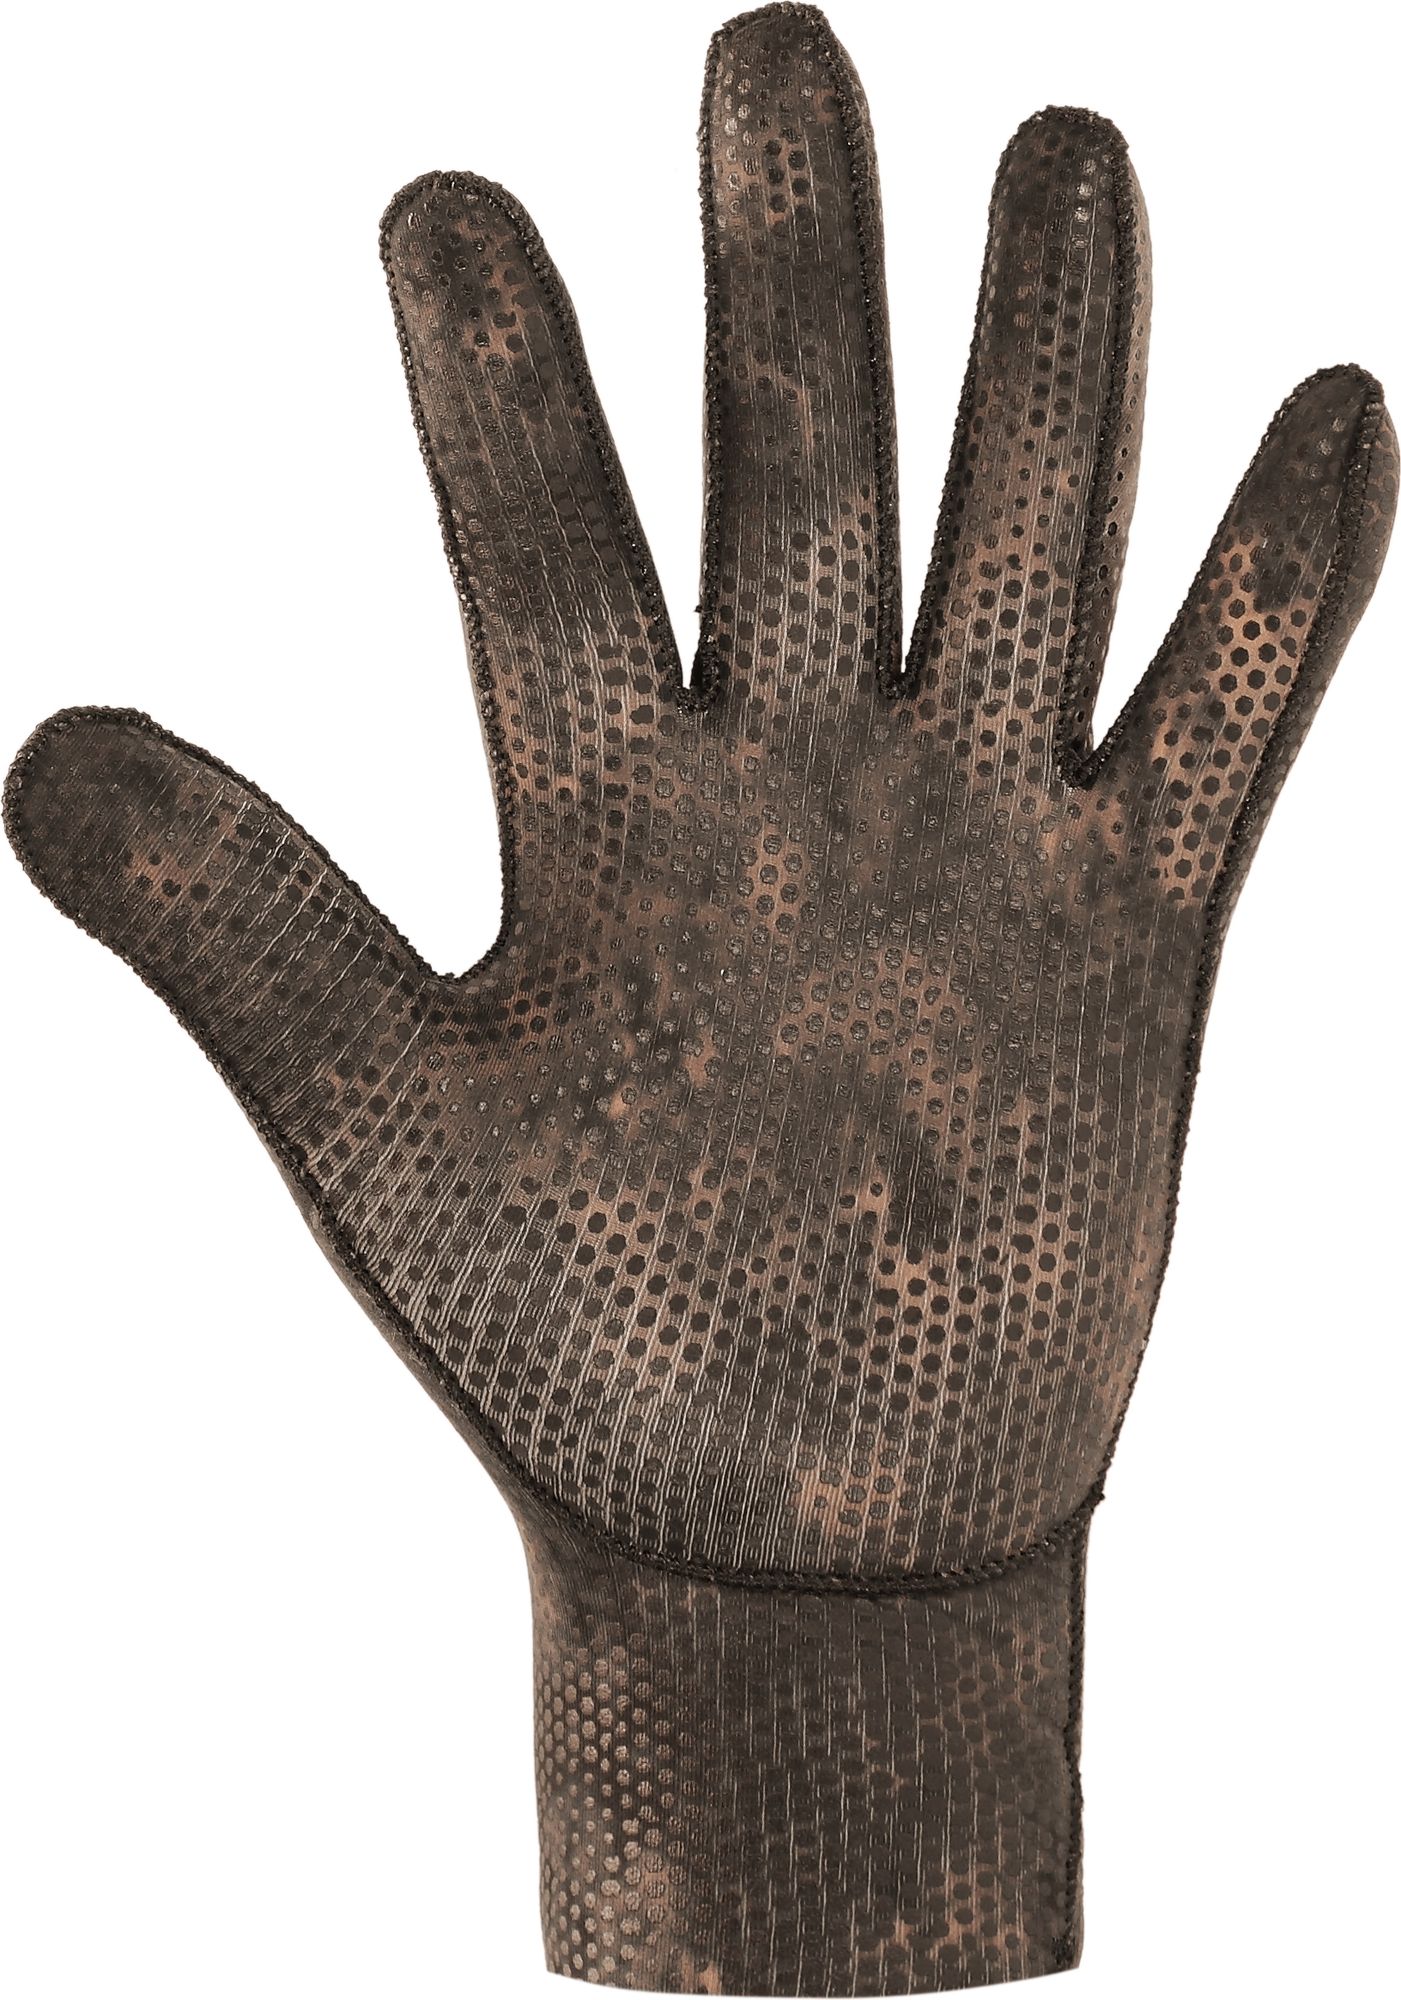 Cressi Tracina Gloves guanti pesca mut abbigliamento spearfishing neoprene wetsuit accessor gloves